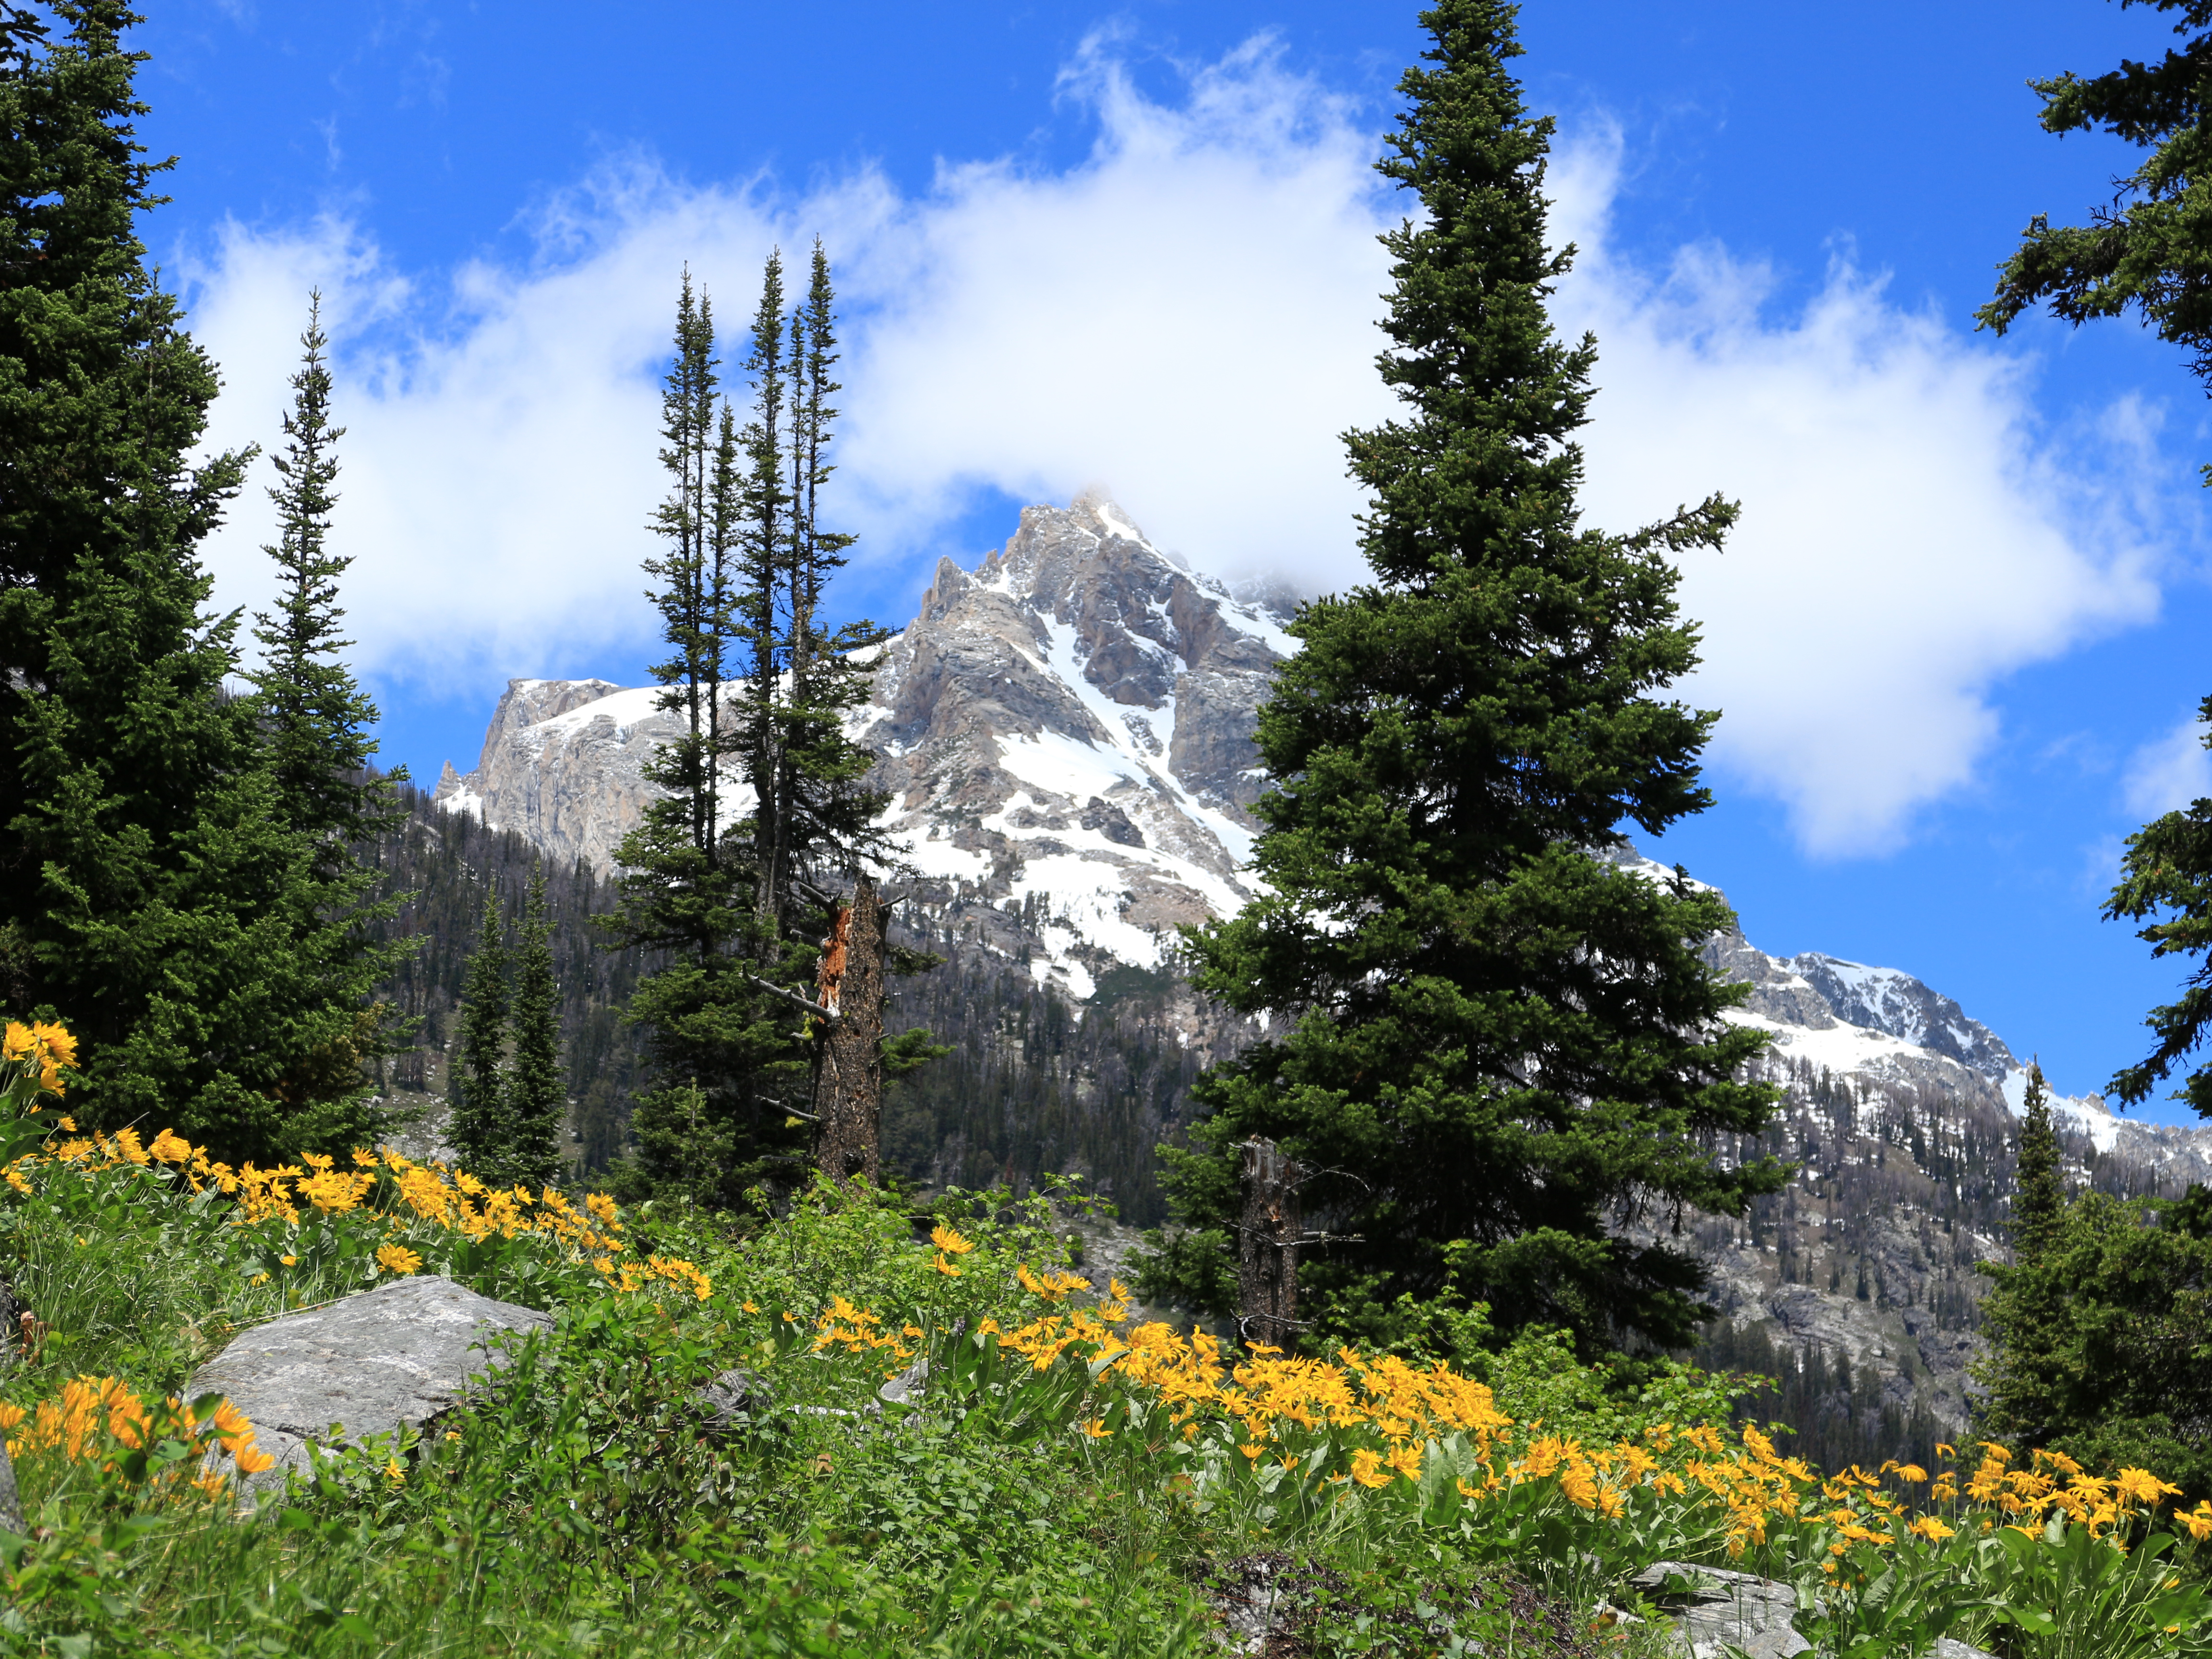 yellow arrowleaf balsamroot blooms with Teewinot Peak towering beyond